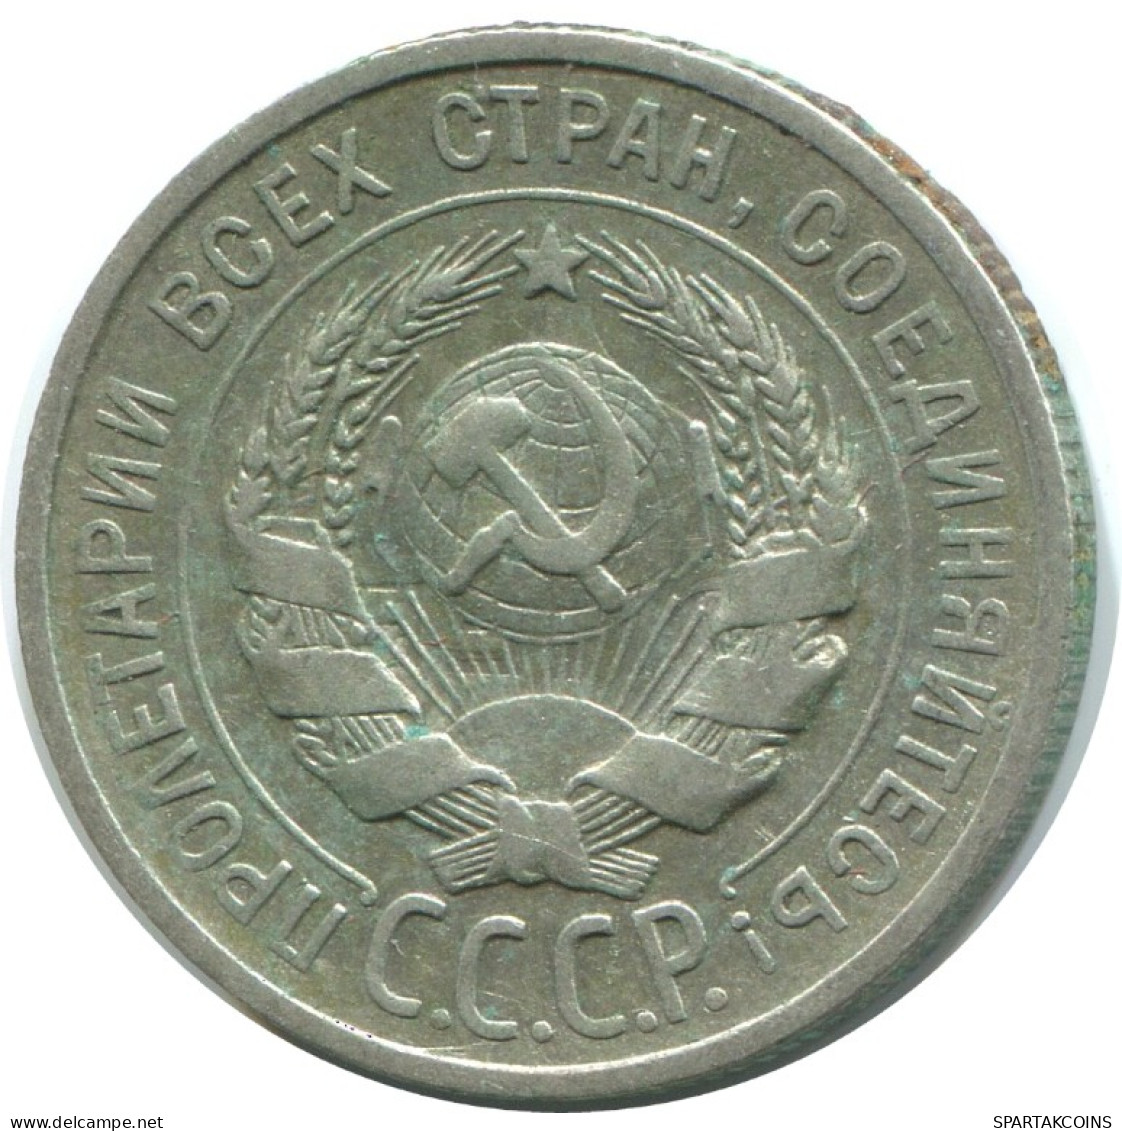 20 KOPEKS 1925 RUSSLAND RUSSIA USSR SILBER Münze HIGH GRADE #AF334.4.D.A - Rusia